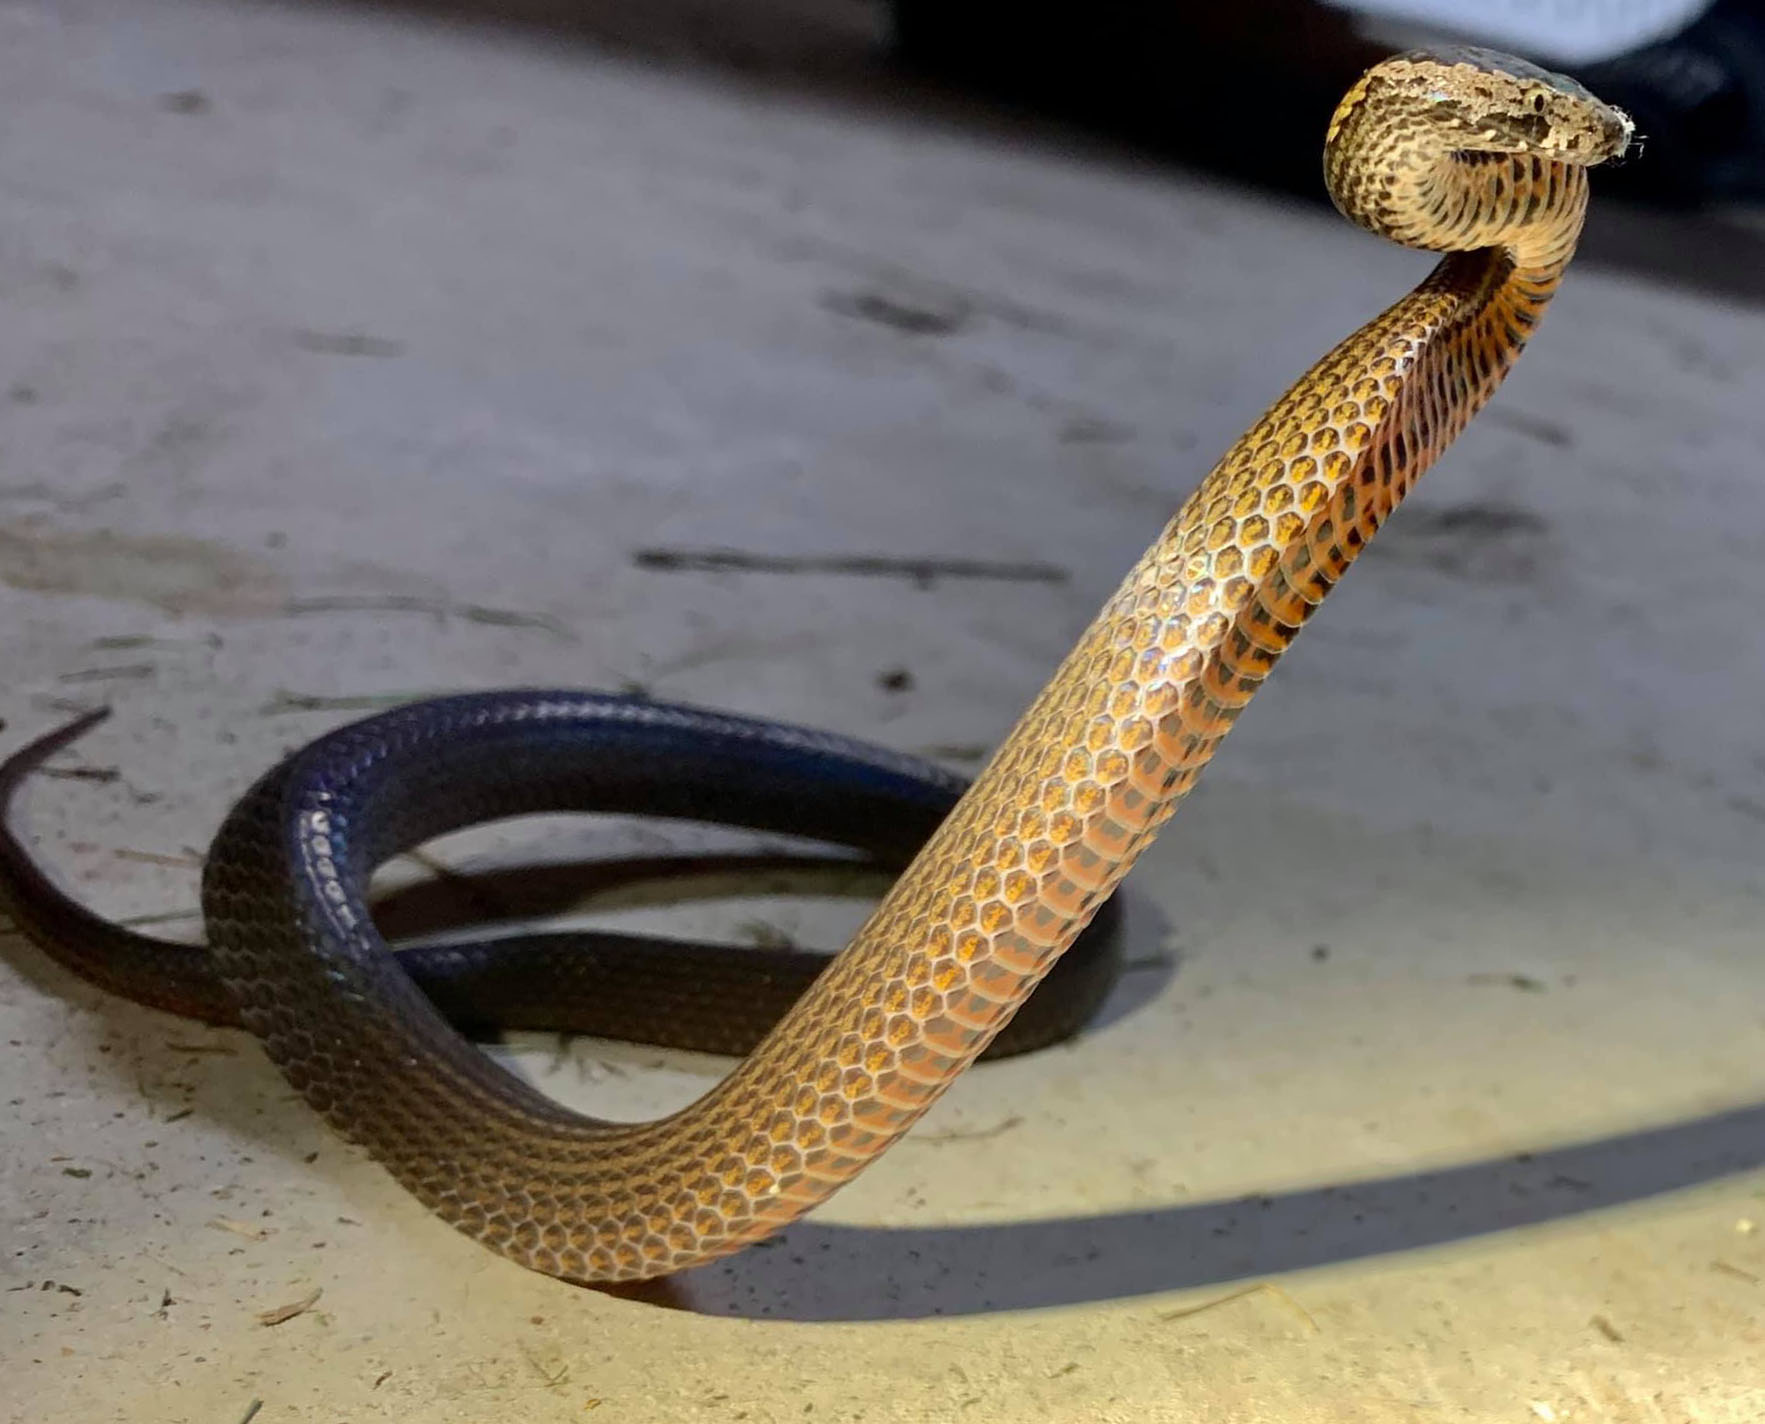 golden crowned snake in defensive pose